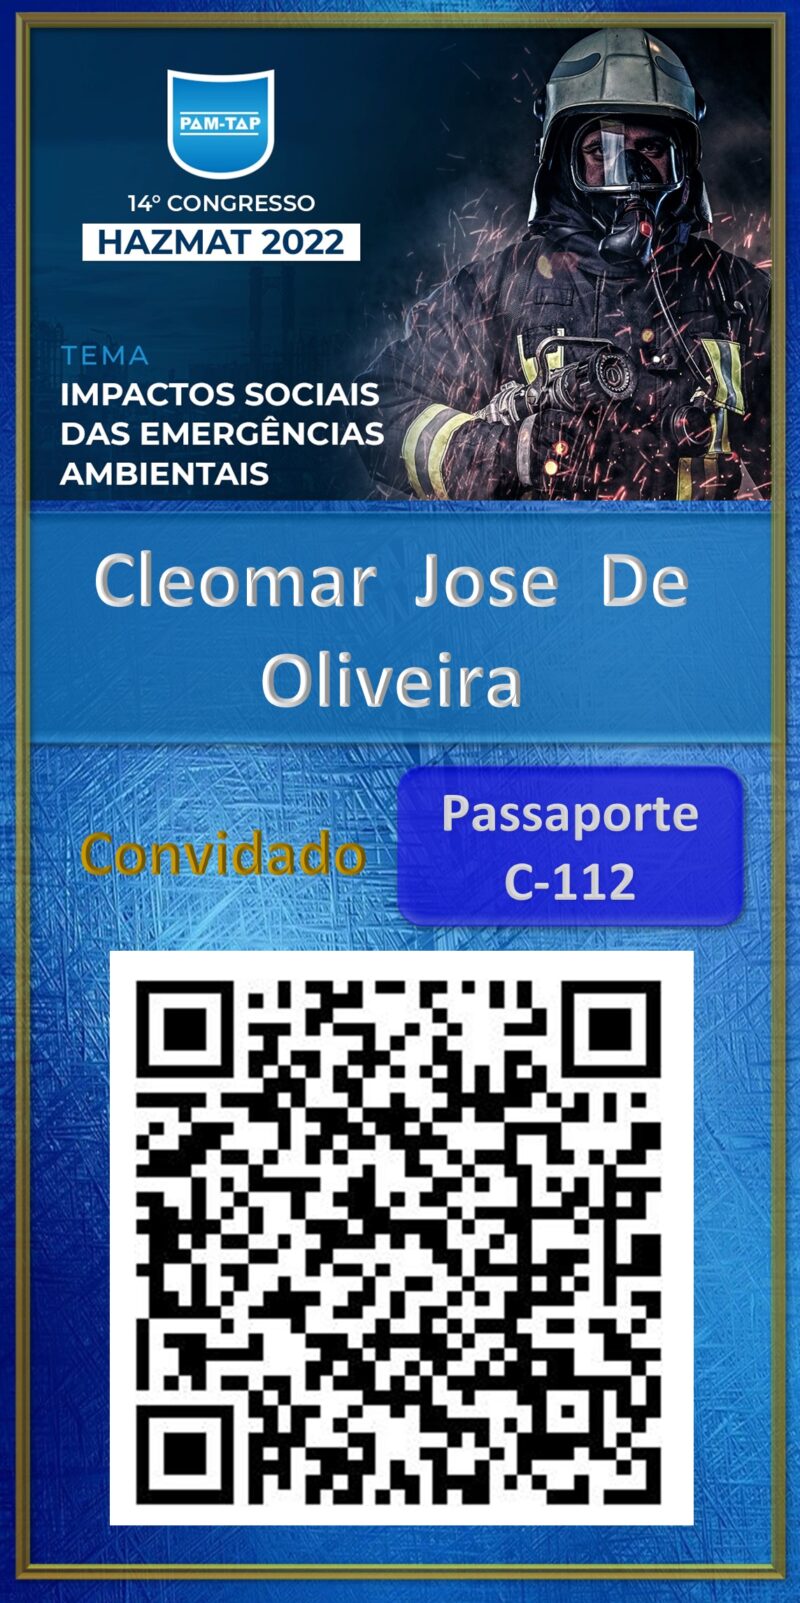 Cleomar  Jose  De Oliveira-Hazmat 2022-Particular